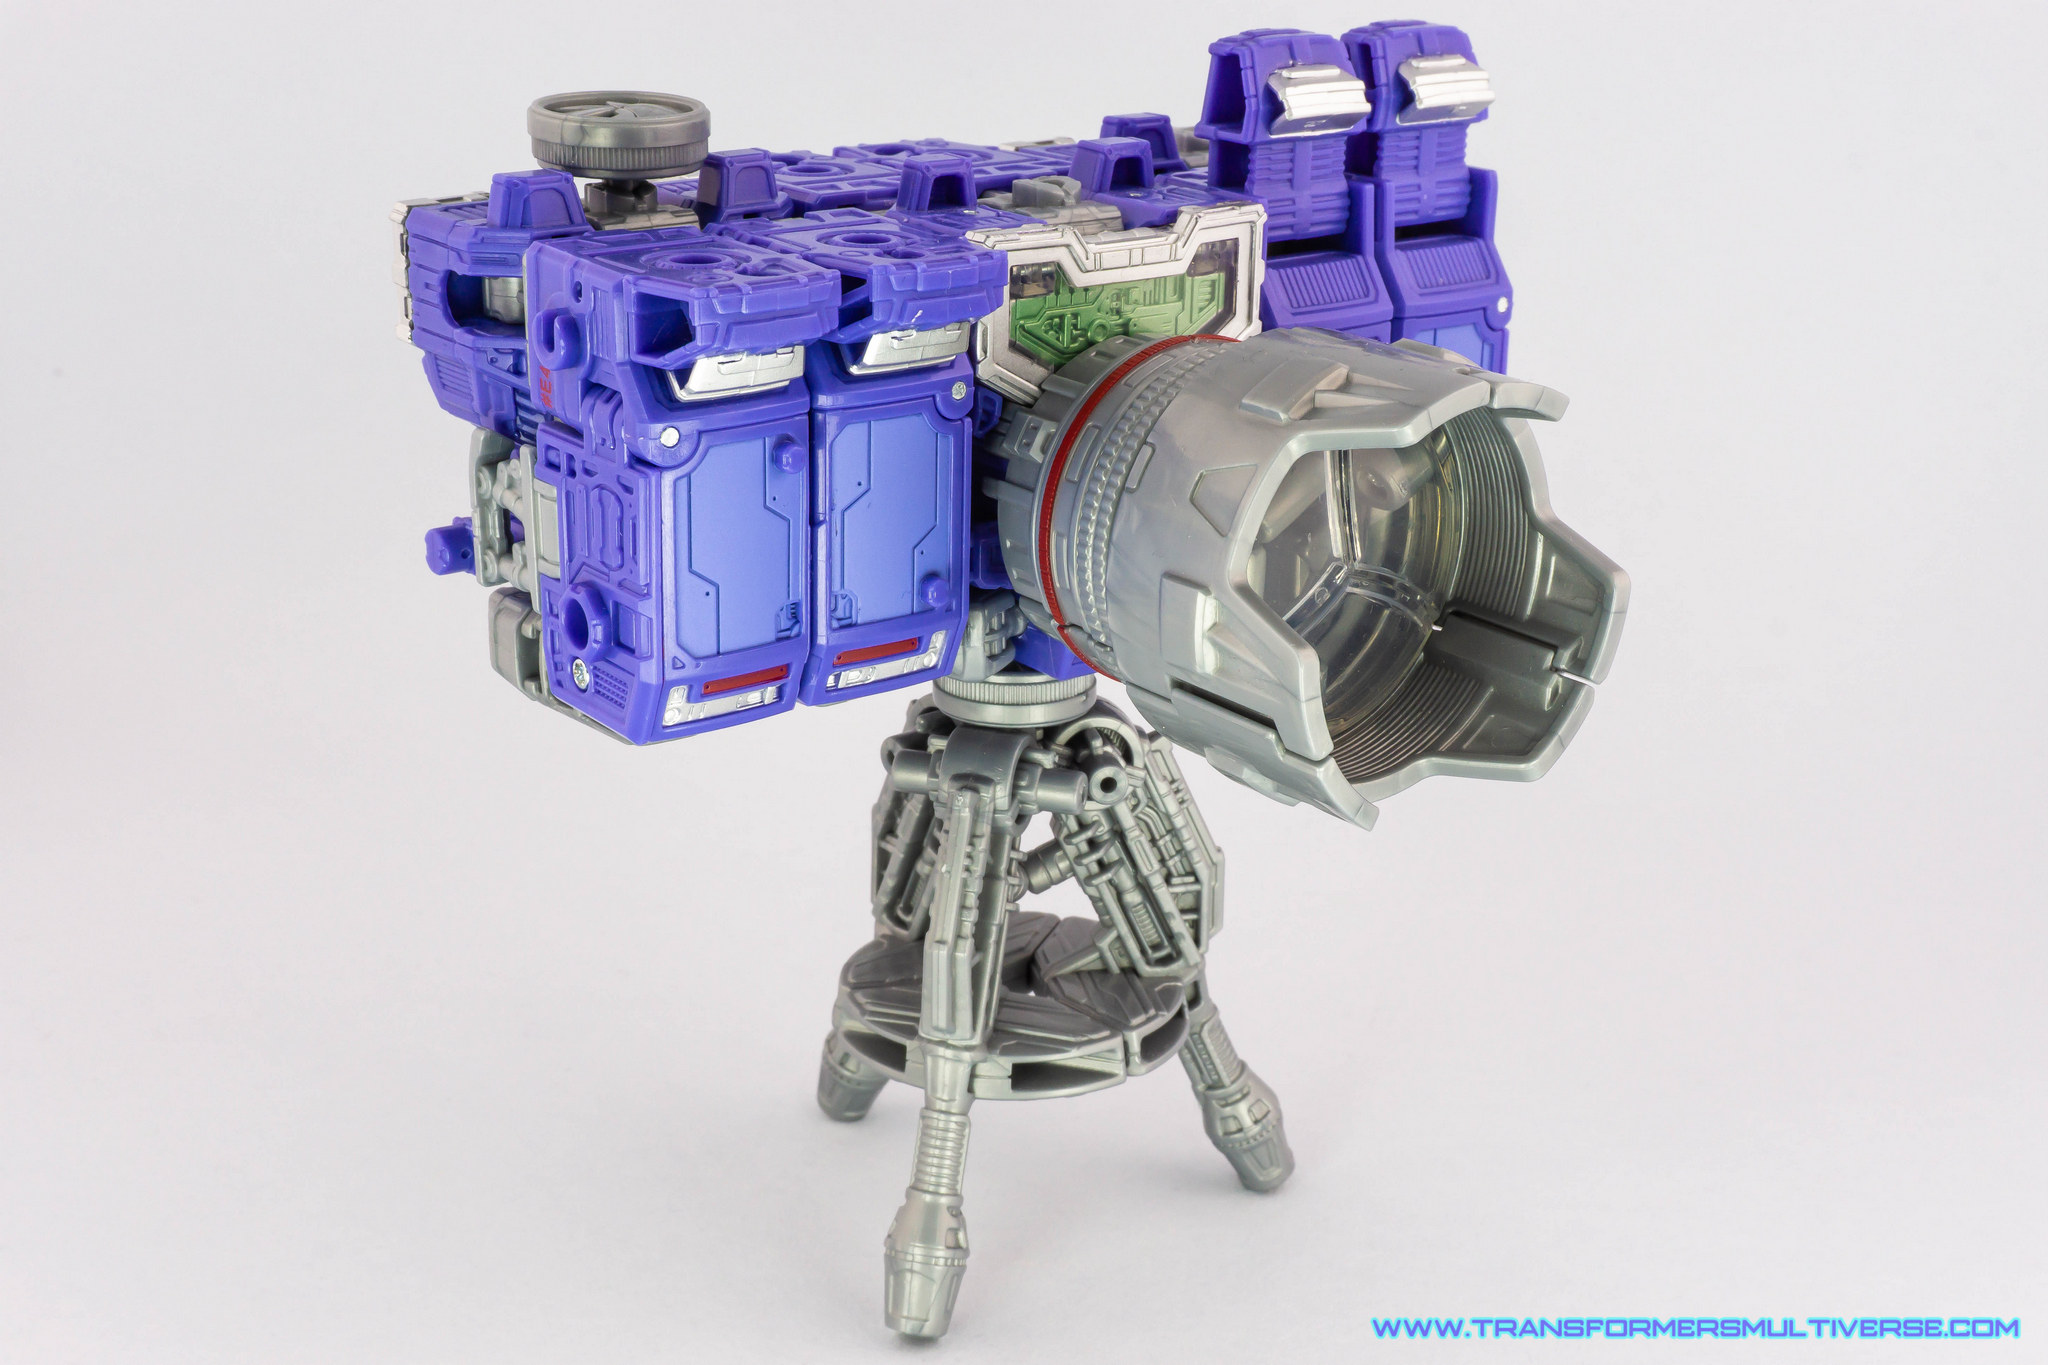 Transformers Siege Refraktor Camera mode, alternate angle